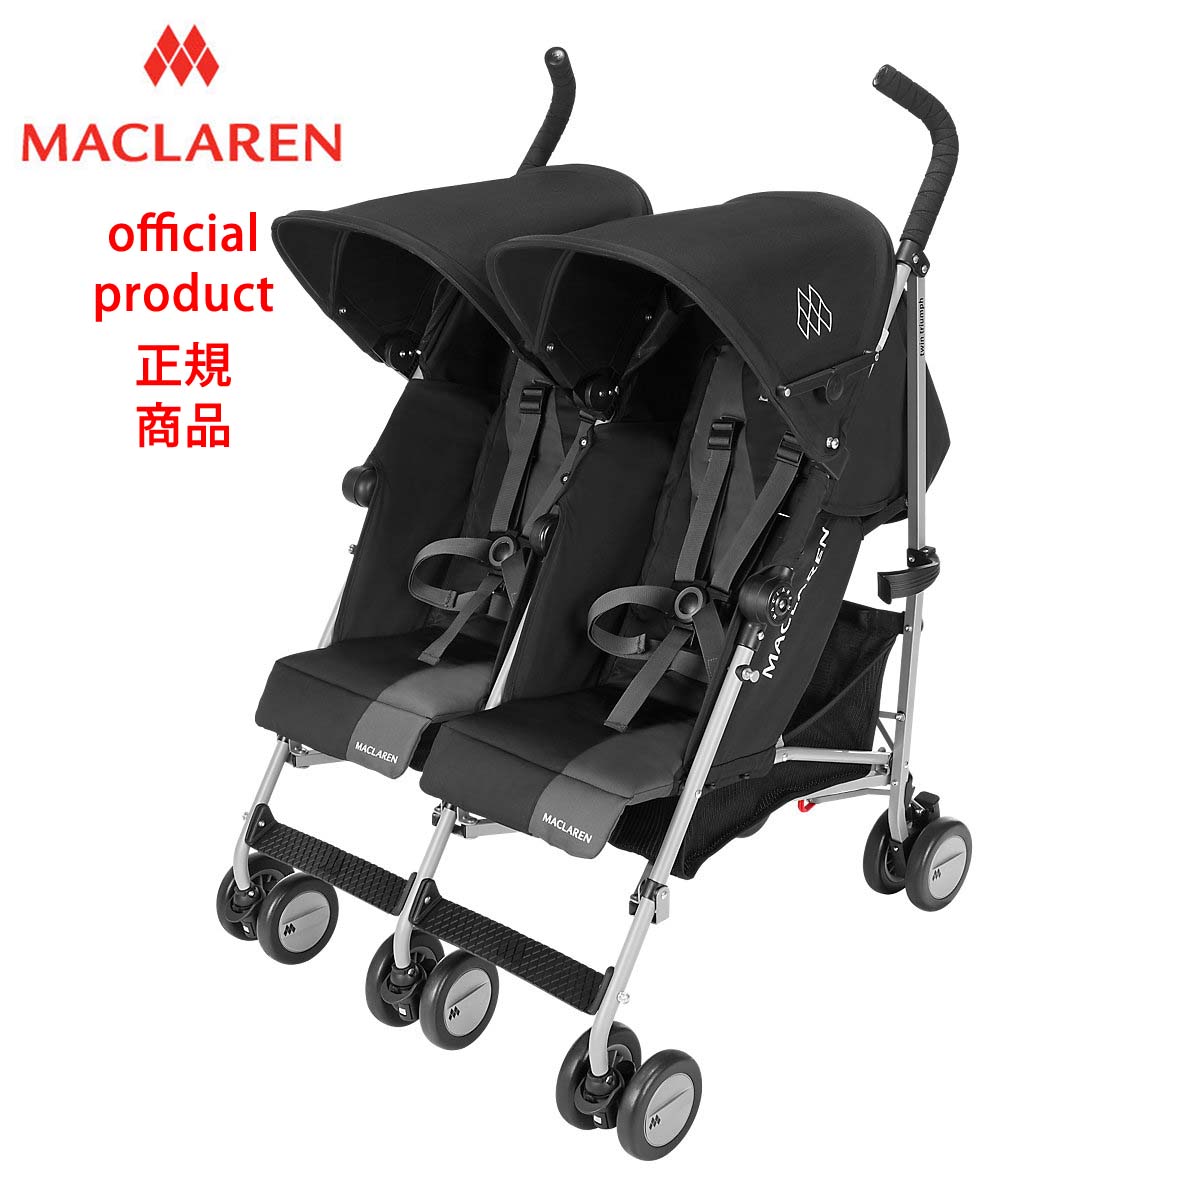 【楽天市場】【生涯保証】50kgまで【正規販売店】マクラーレン ツイントライアンフ Maclaren Twin Triumph _ ブラック